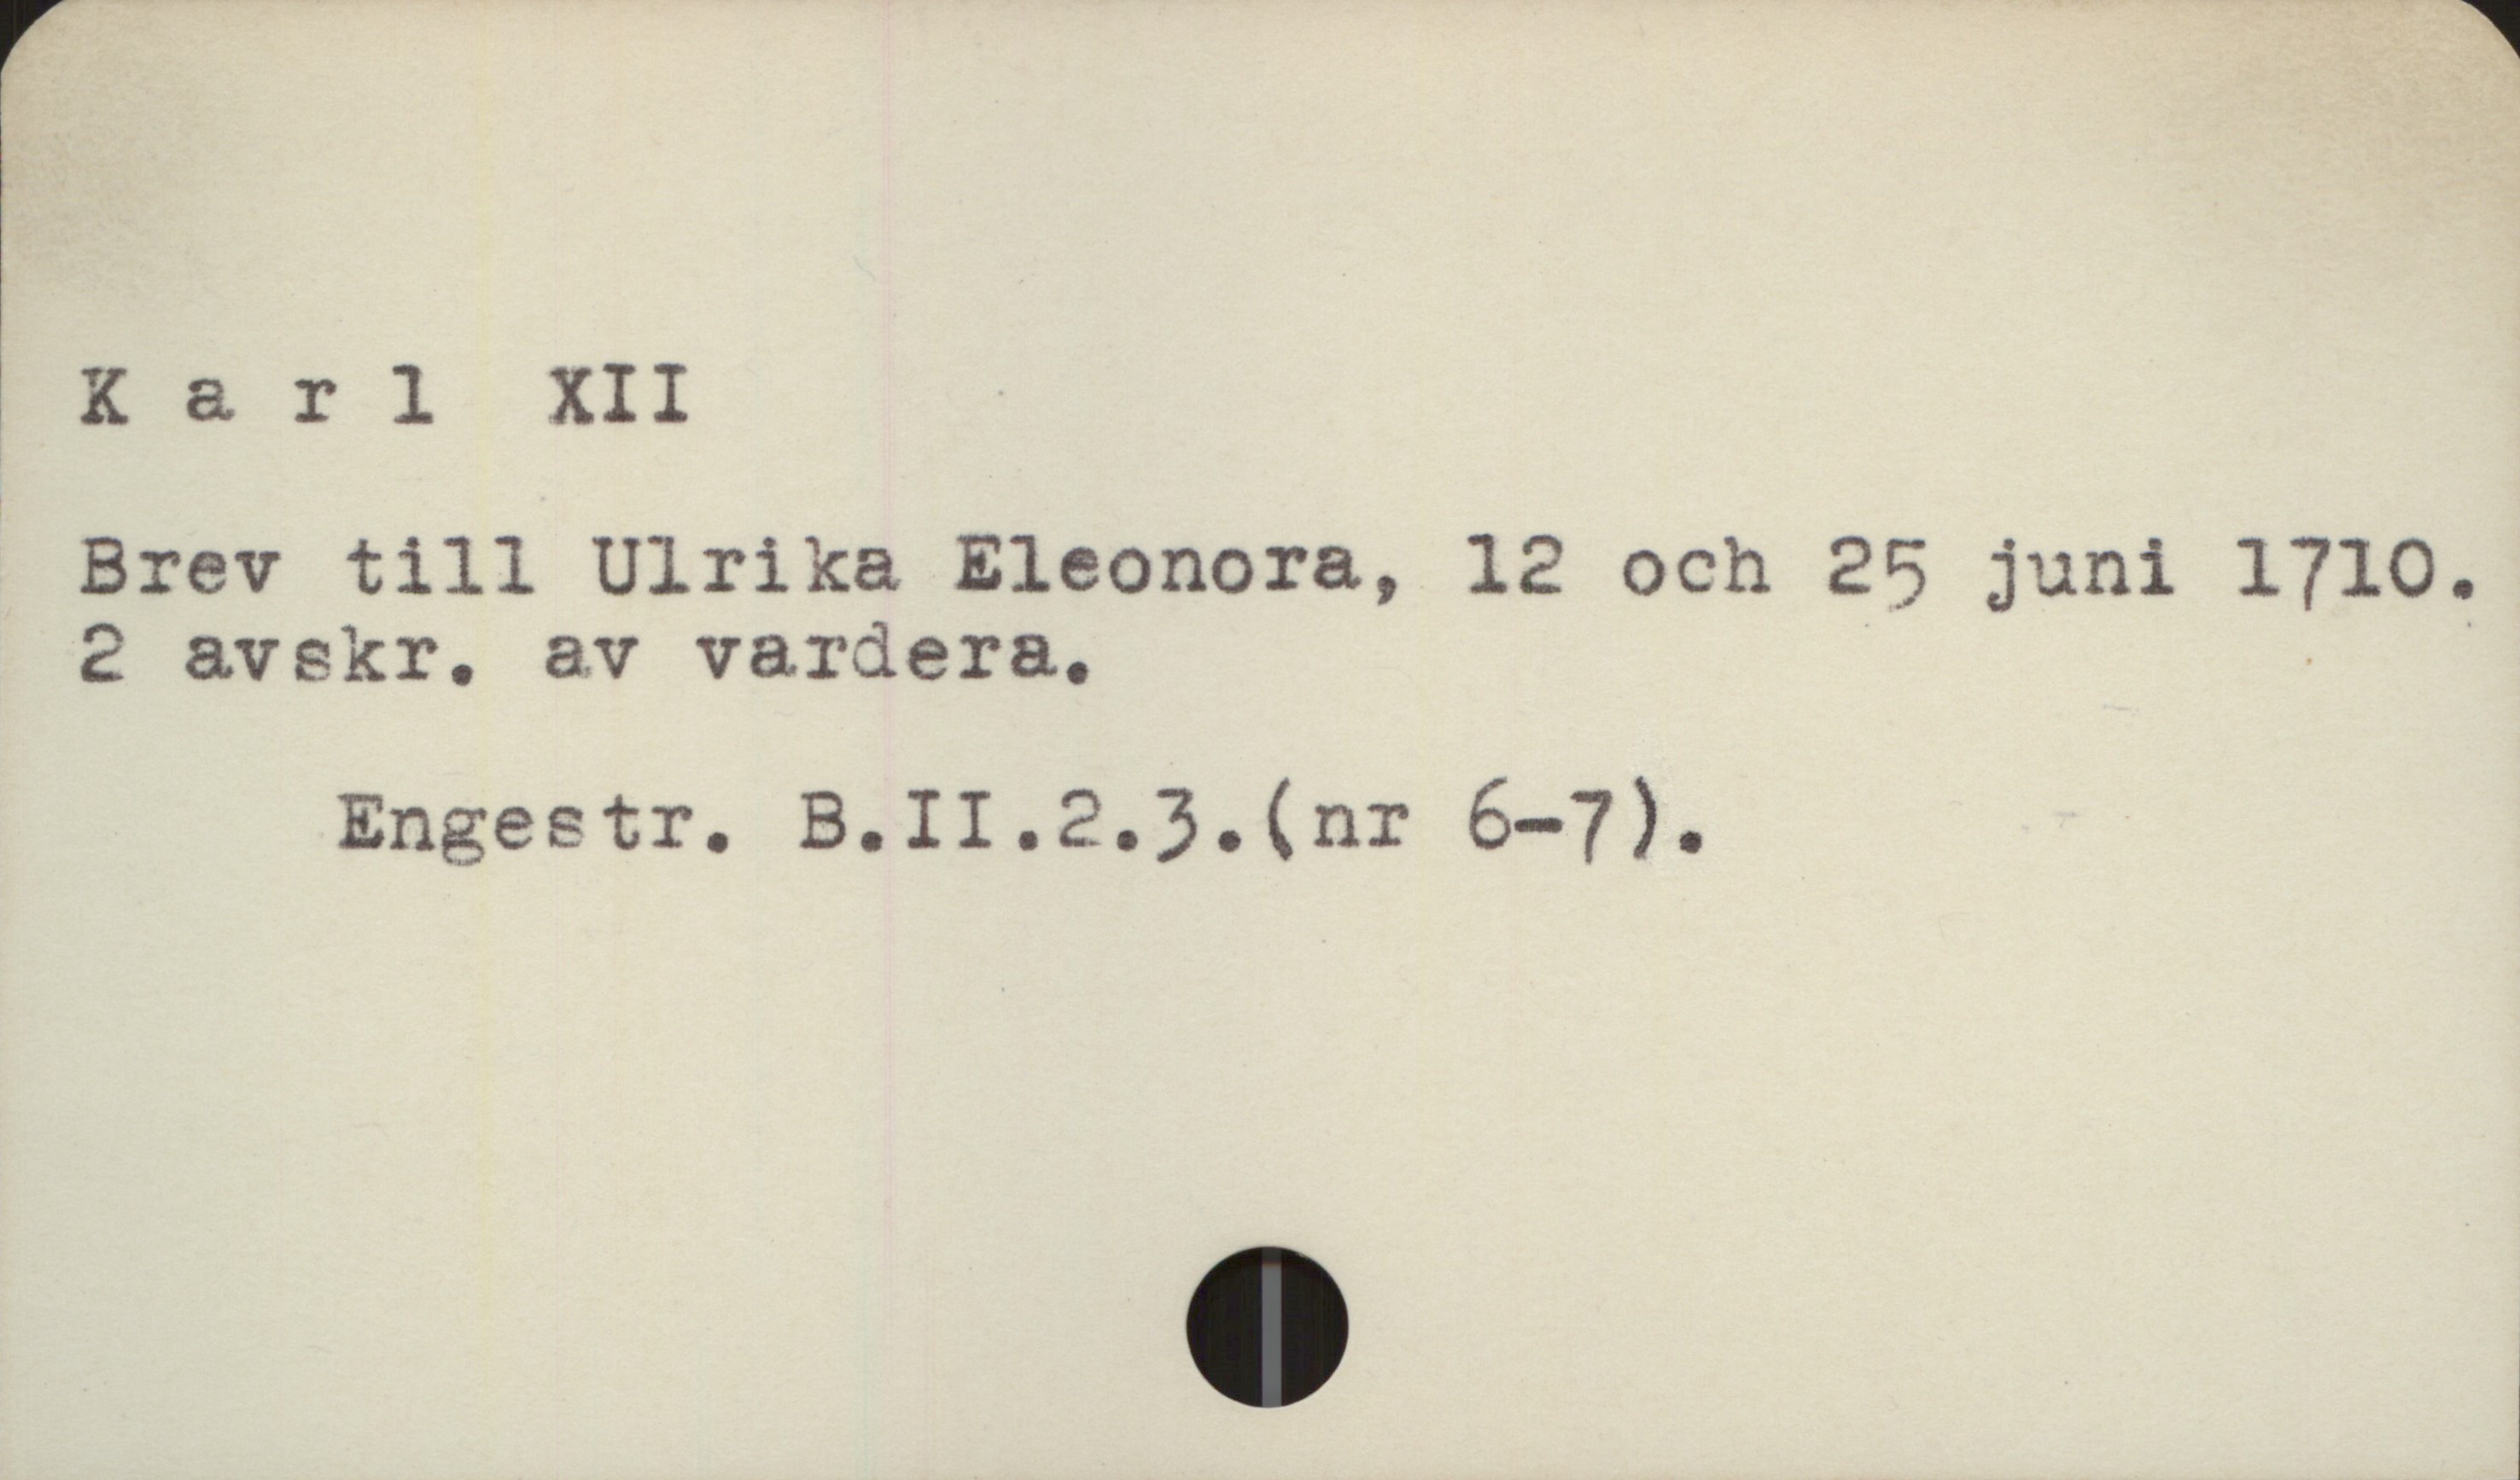  Karl XII

Brev till Ulrika Eleonora, 12 och 25 juni 1710.

2 avskr. av vardera, - '
Engestr. B. II.2.3. (nr 6-7).

